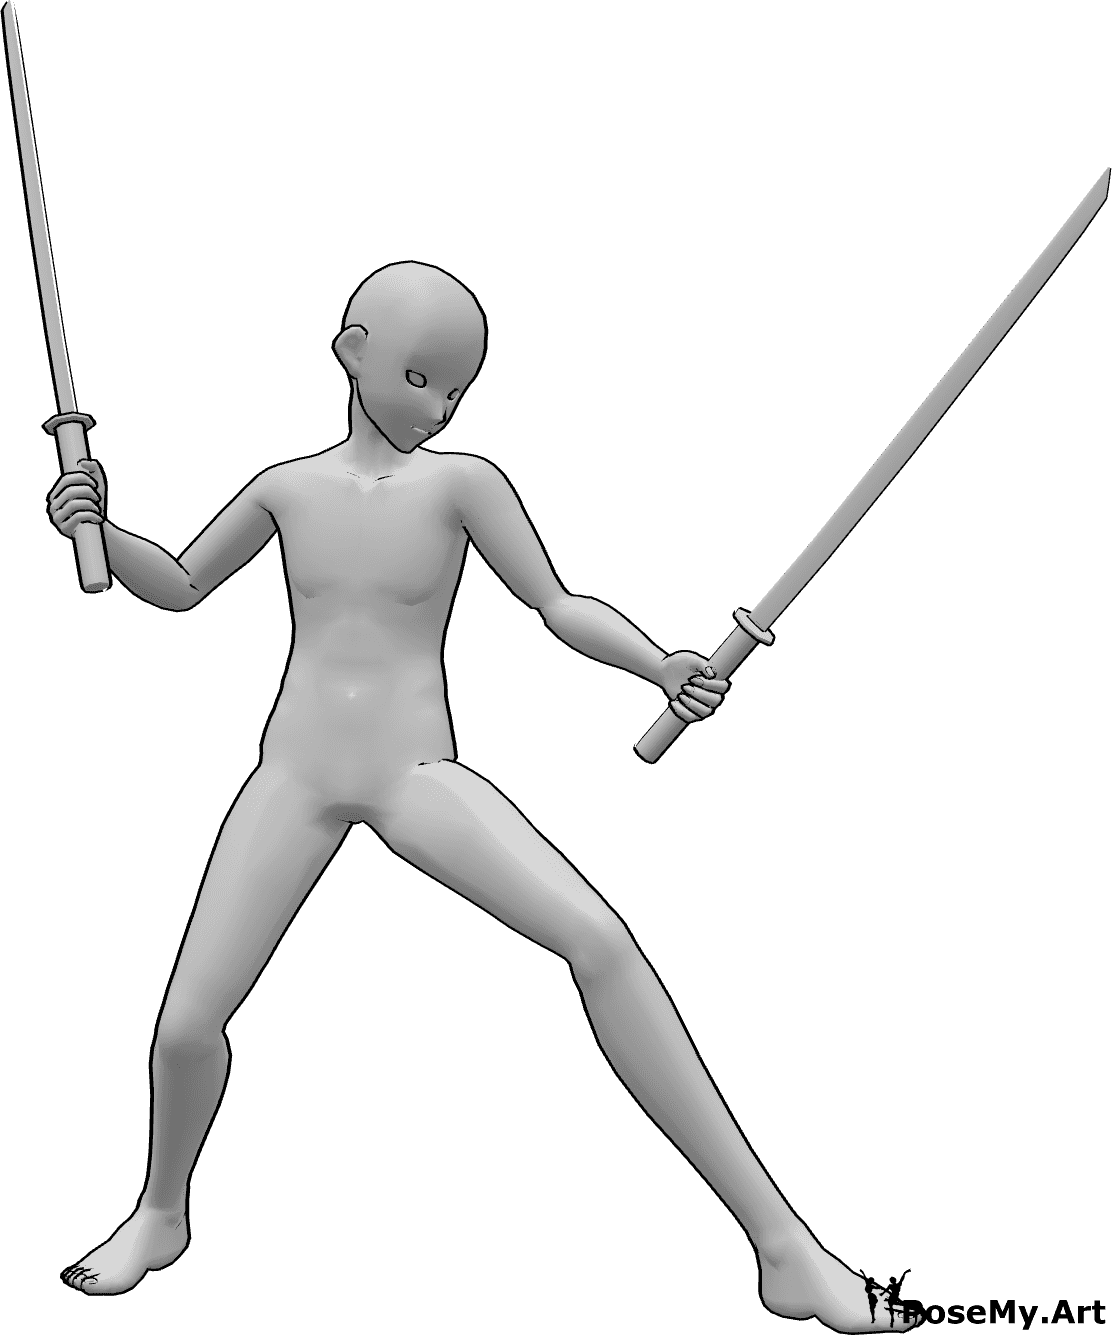 Posen-Referenz- Anime männliche Ninja Pose - Anime-Männchen hält Katanas in beiden Händen, schaut nach links und ist bereit zu kämpfen